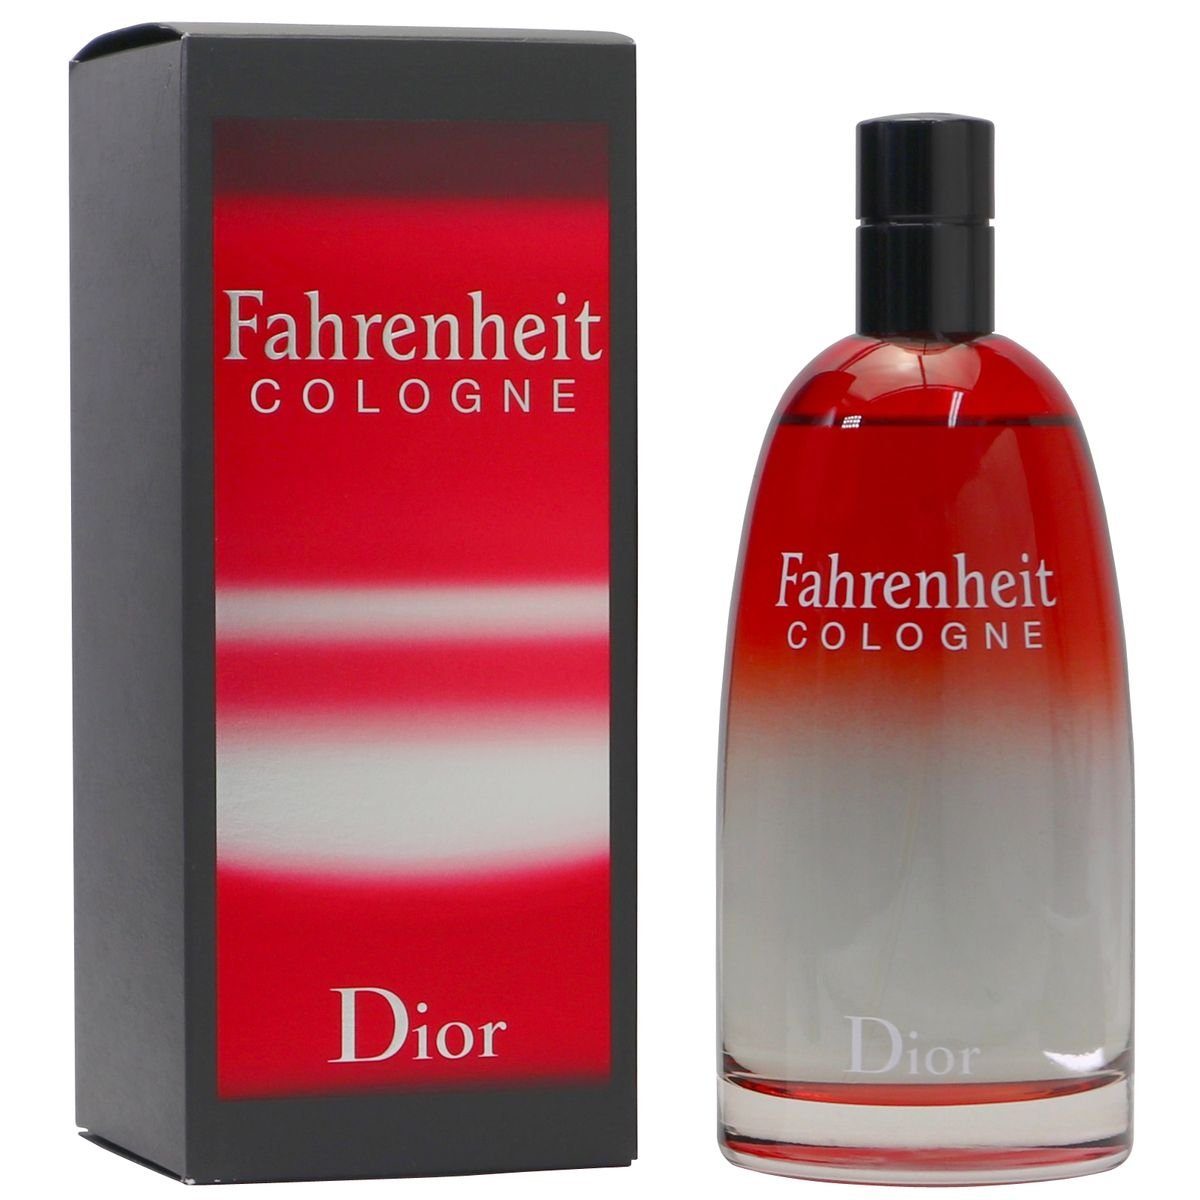 Eau Cologne Dior 200 Spray Christian de Fahrenheit ml Cologne Dior